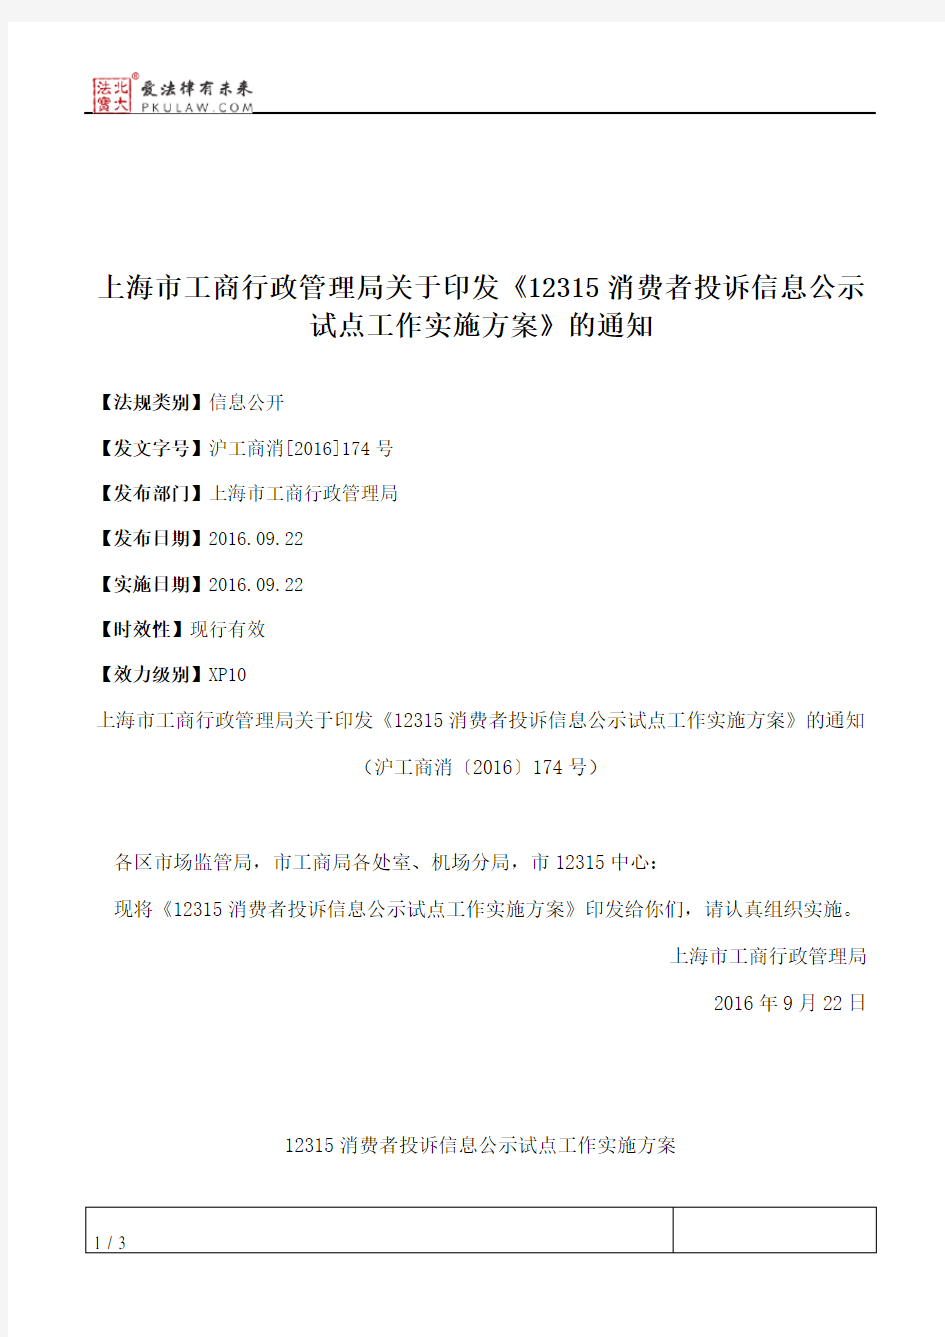 上海市工商行政管理局关于印发《12315消费者投诉信息公示试点工作